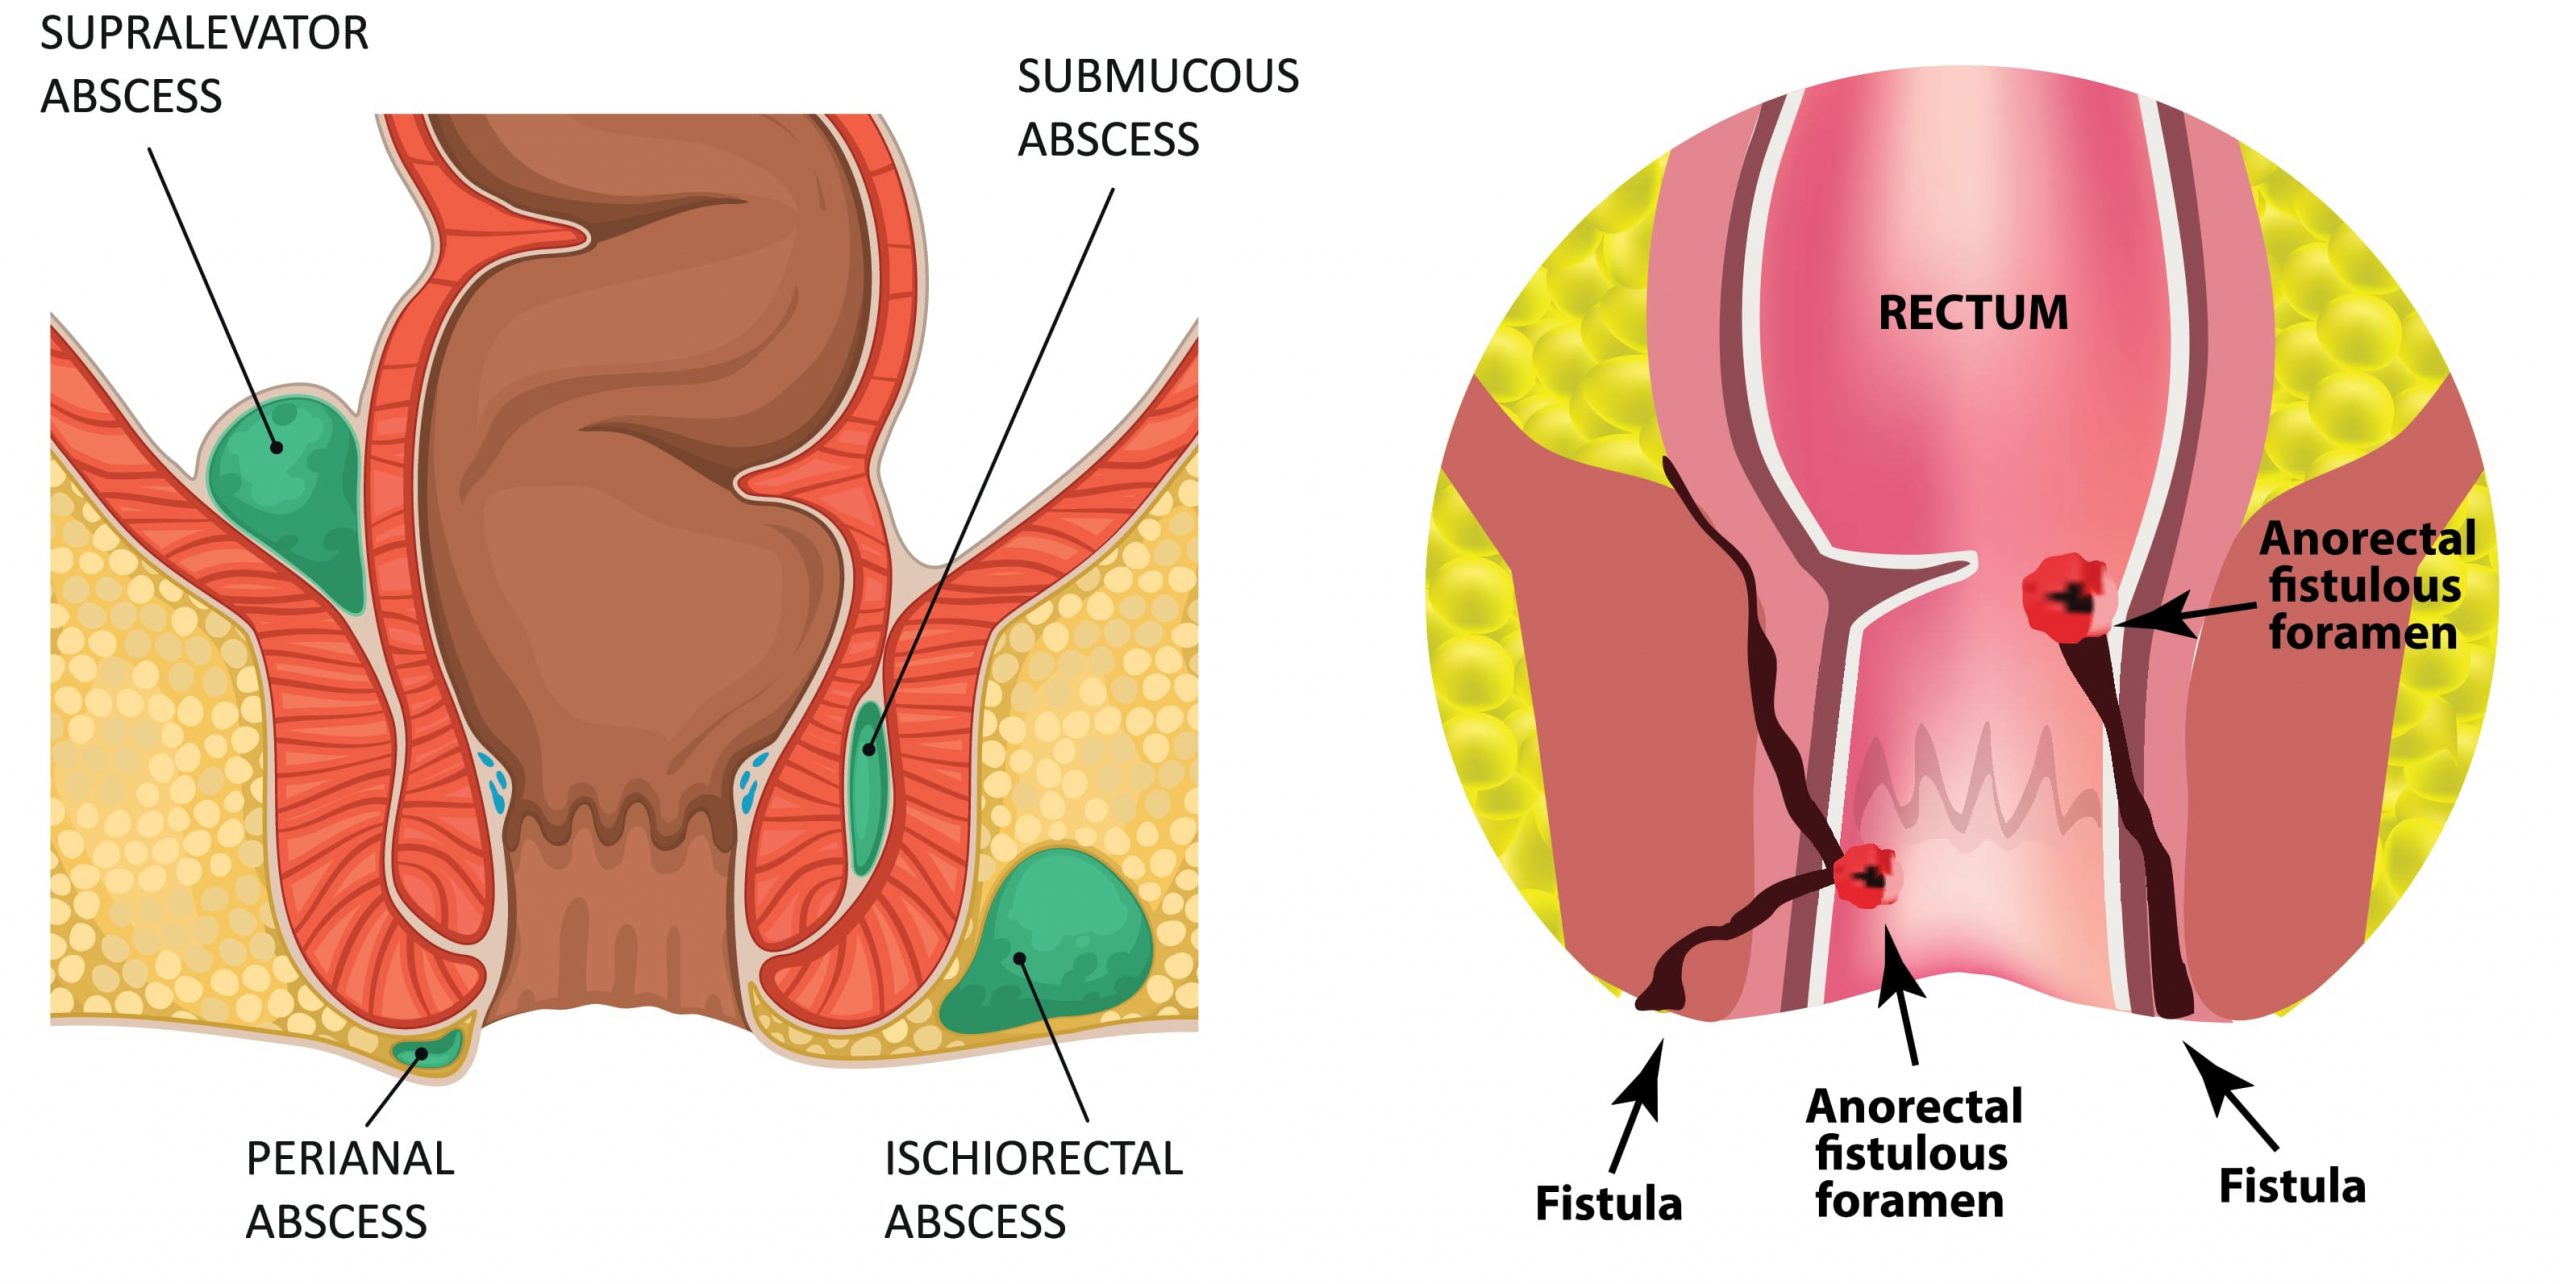 Болевой синдром при геморрое, отдающий в копчик, имеет постоянный тянущий характер, а также нарастает во время опорожнения кишечника